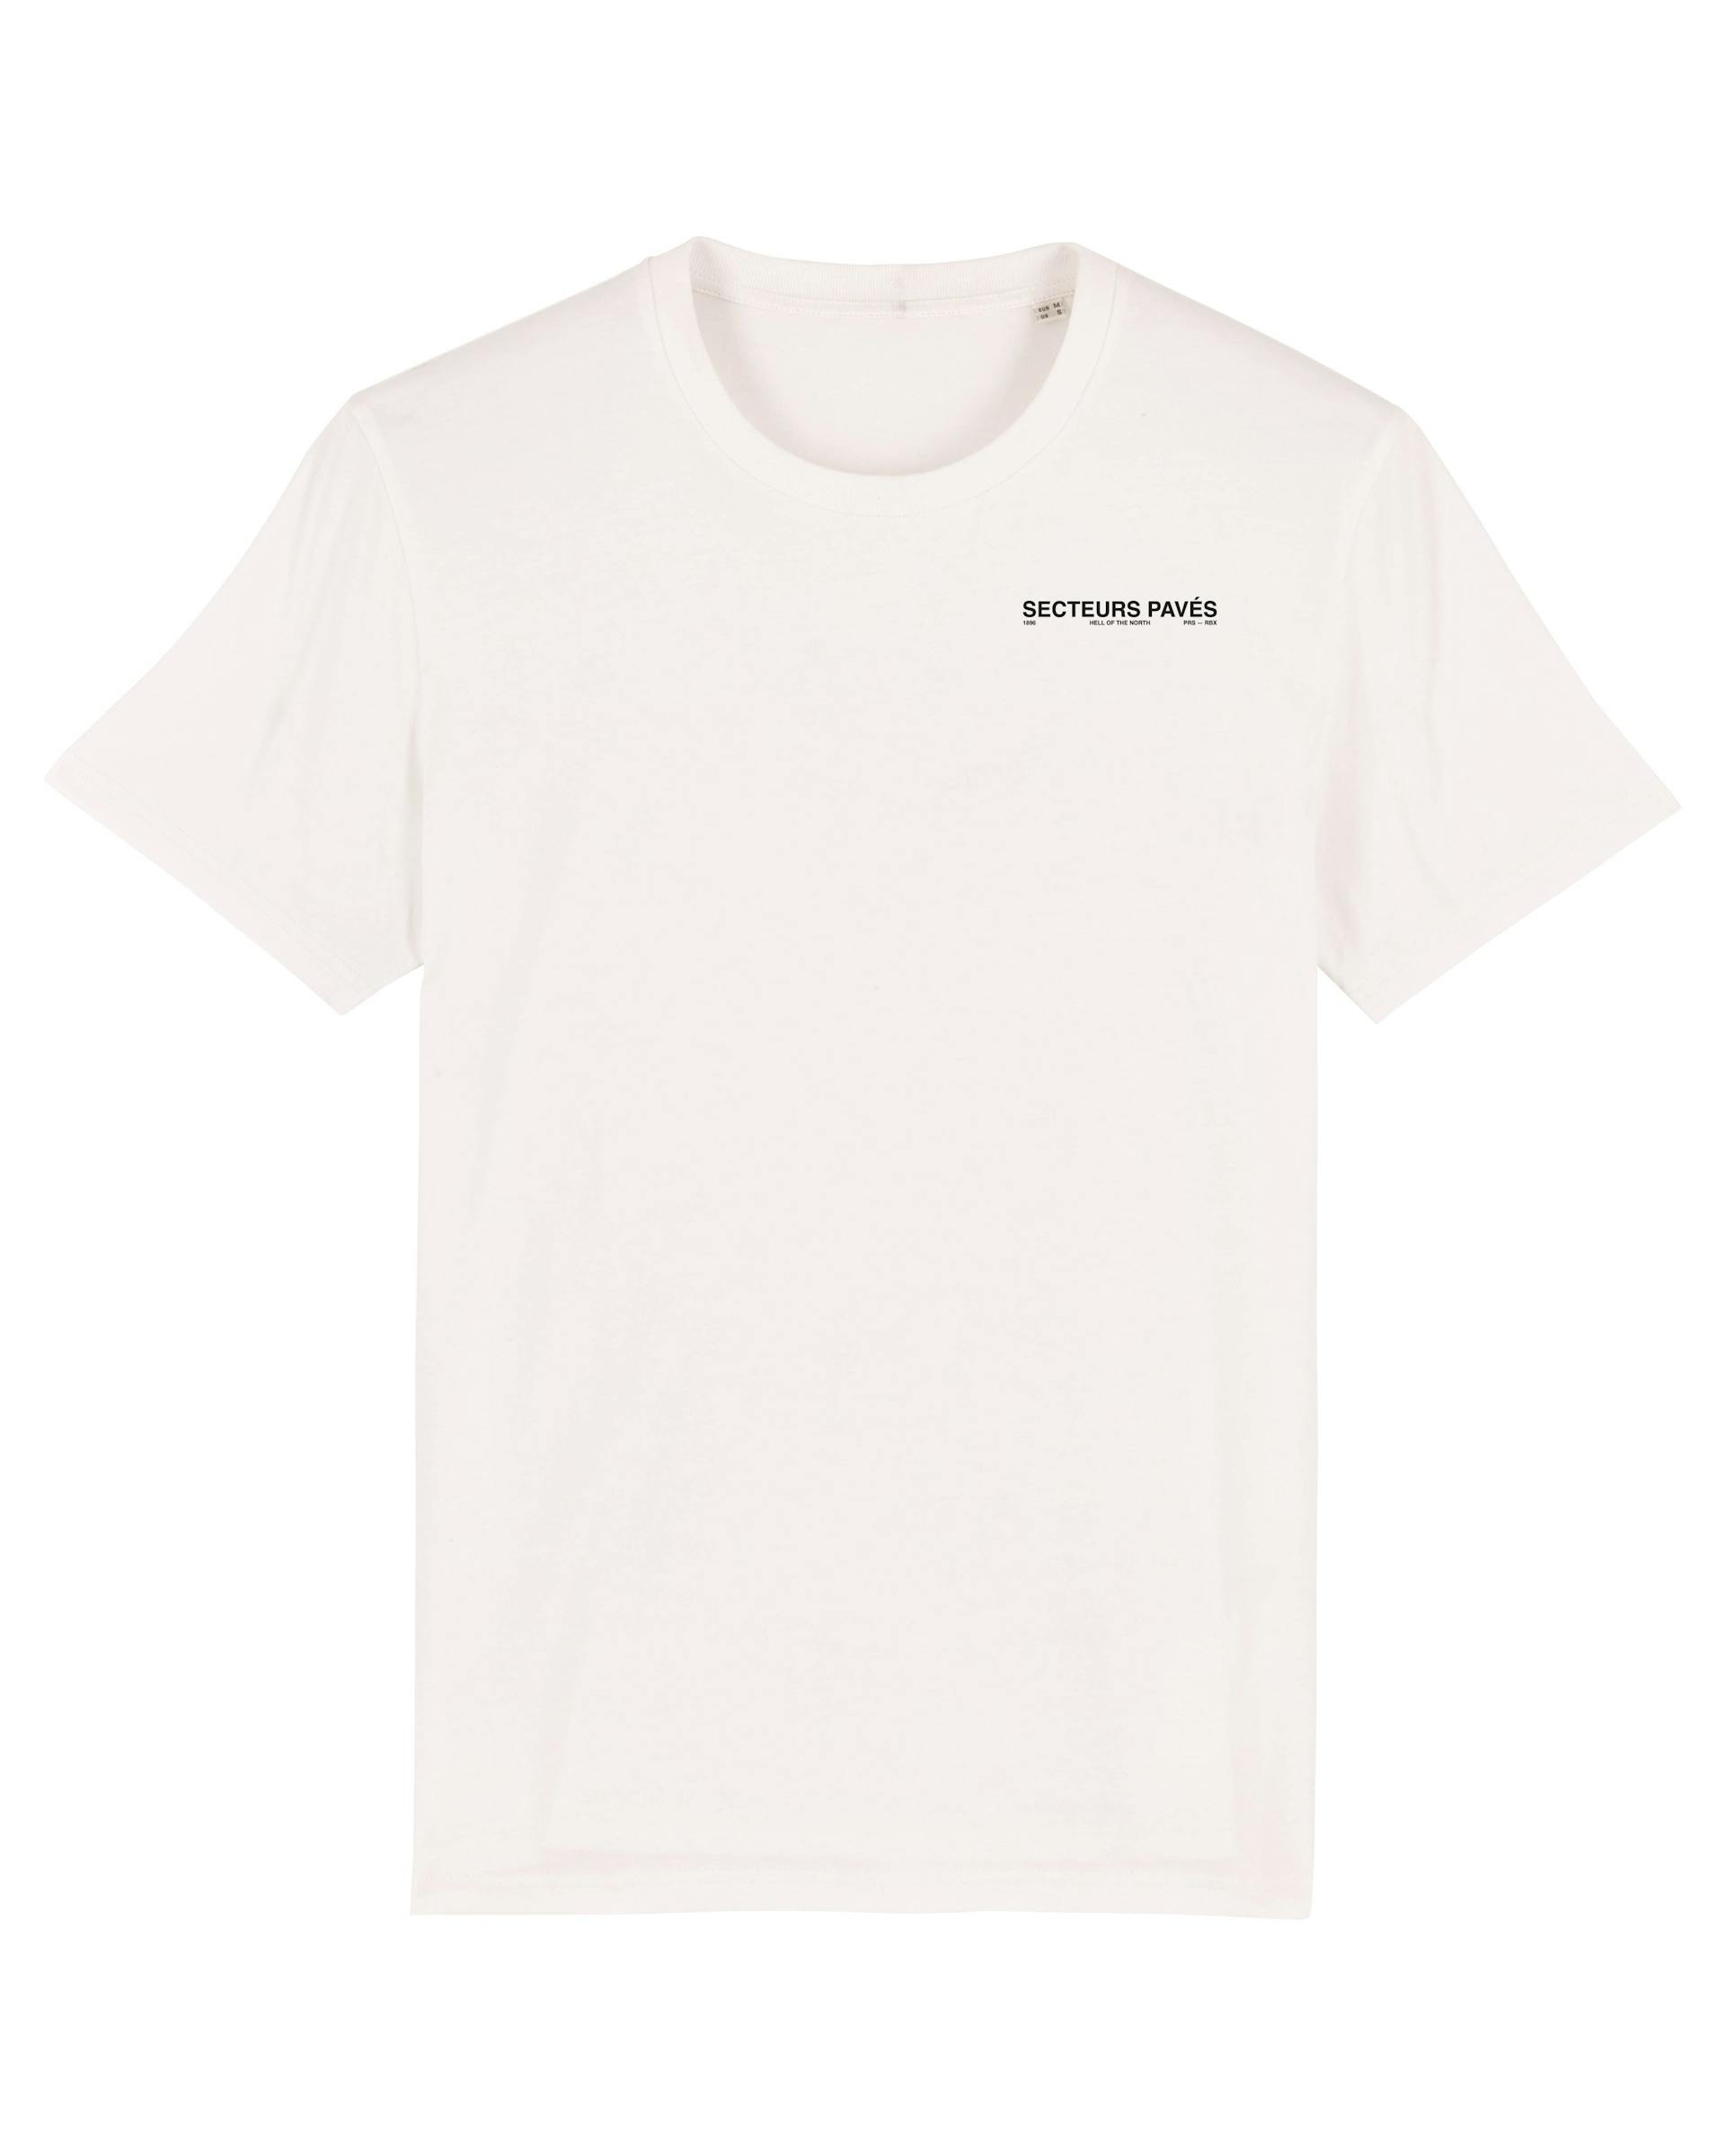 Secteurs Pavés Roubaix Unisex Cycling T-shirt - Offwhite